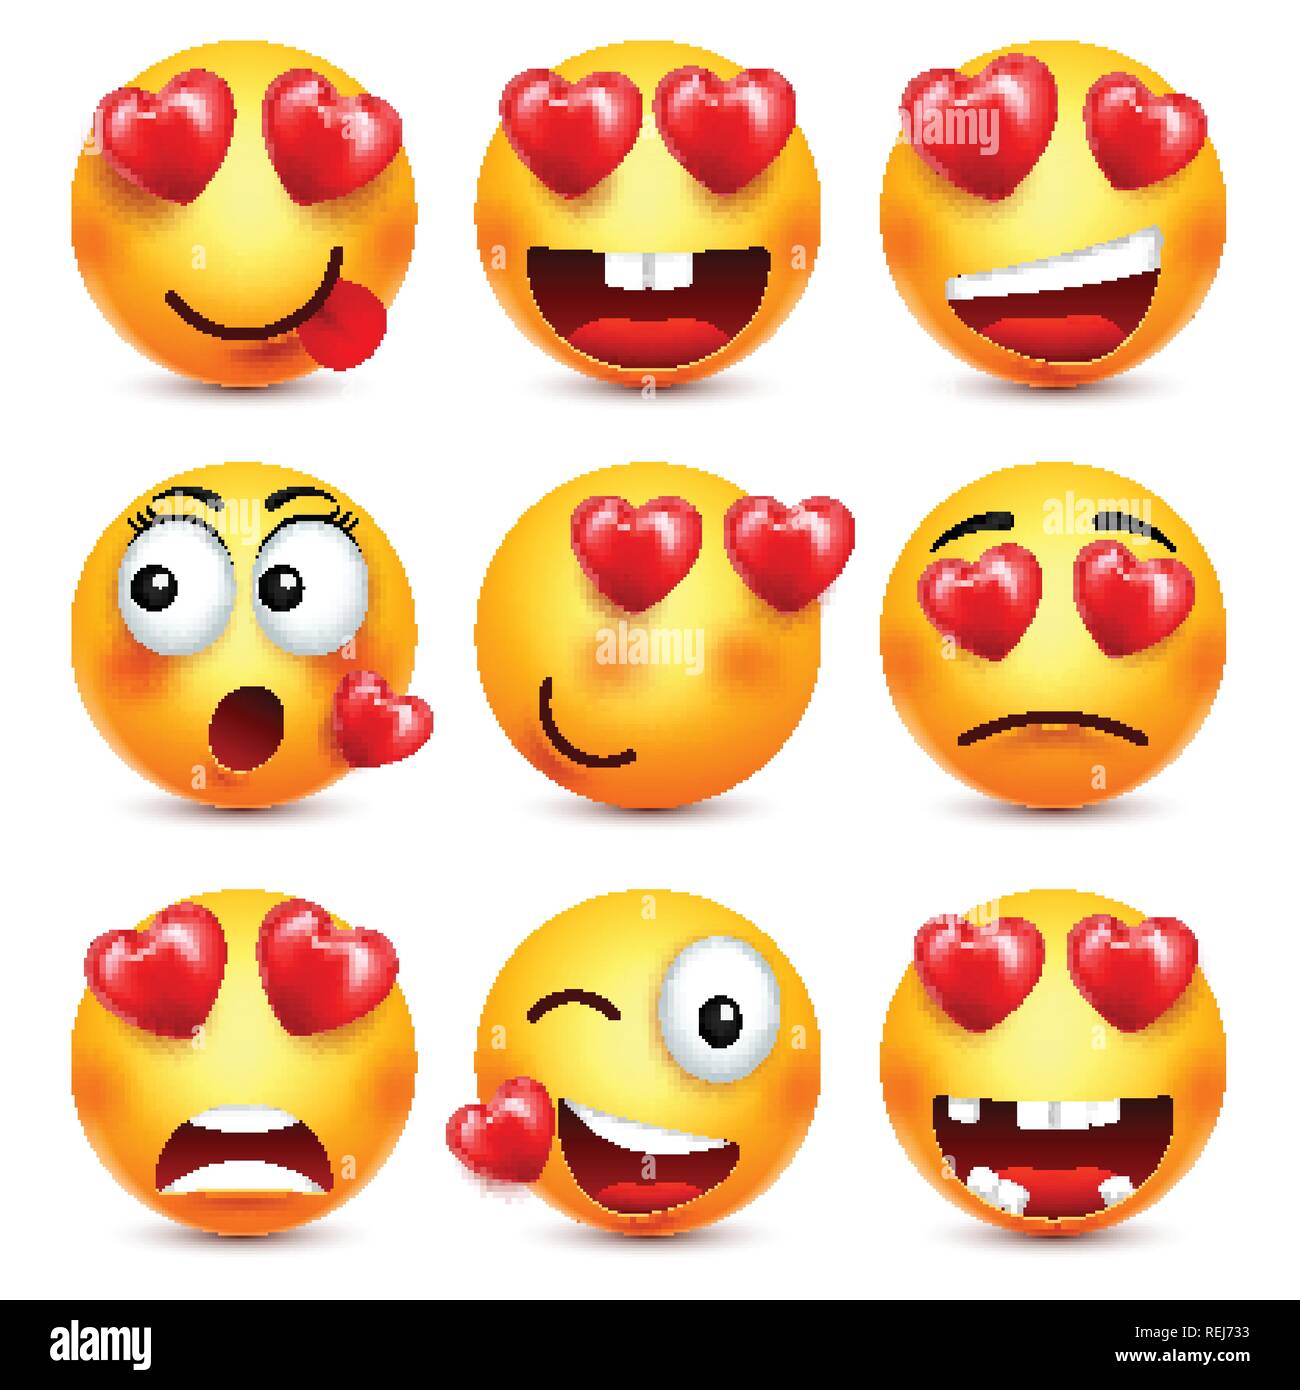 Smileys Emoji mit roten Herzen Vector eingestellt. Valentines Tag gelb cartoon Emoticons Gesicht. Liebe Gefühl Ausdruck. Stock Vektor